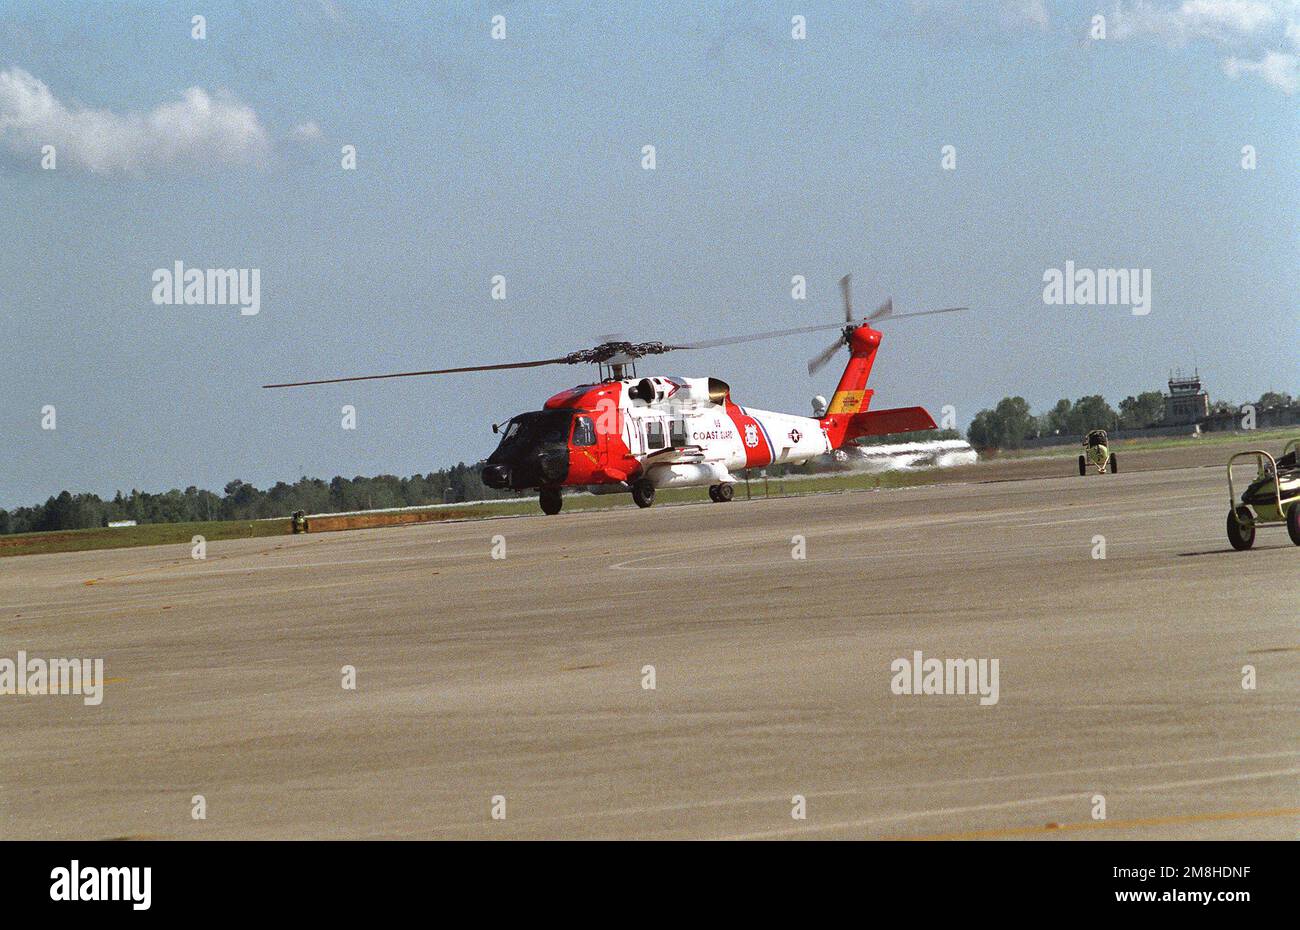 Un hélicoptère Jayhawk HH-60J de la Garde côtière s'enfile sur la ligne de vol lors d'un spectacle aérien. Base: Eglin Air Force base État: Floride (FL) pays: Etats-Unis d'Amérique (USA) Banque D'Images